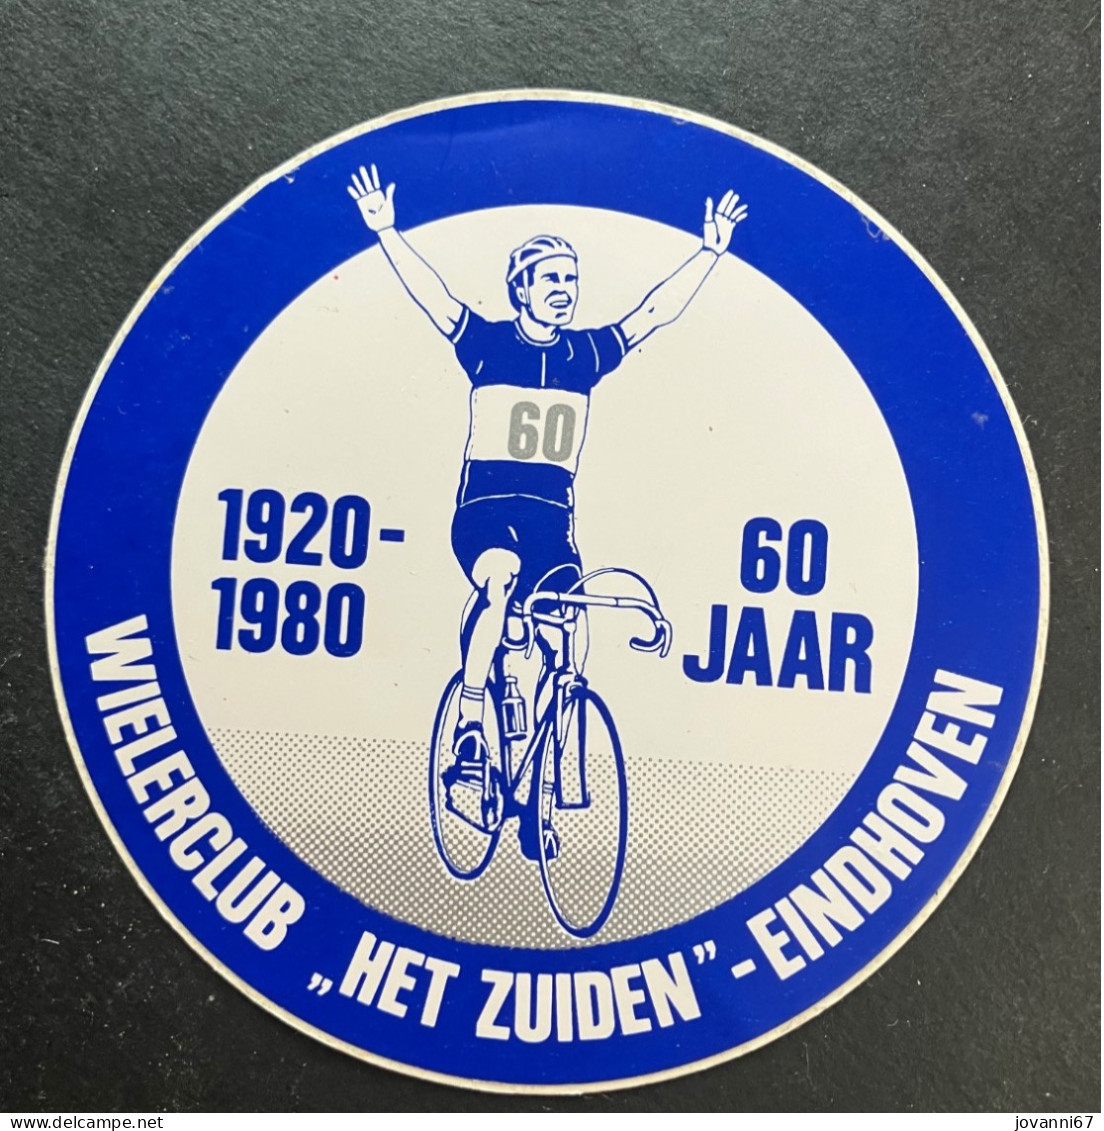 Het Zuiden Eindhoven  - Sticker - Cyclisme - Ciclismo -wielrennen - Cyclisme